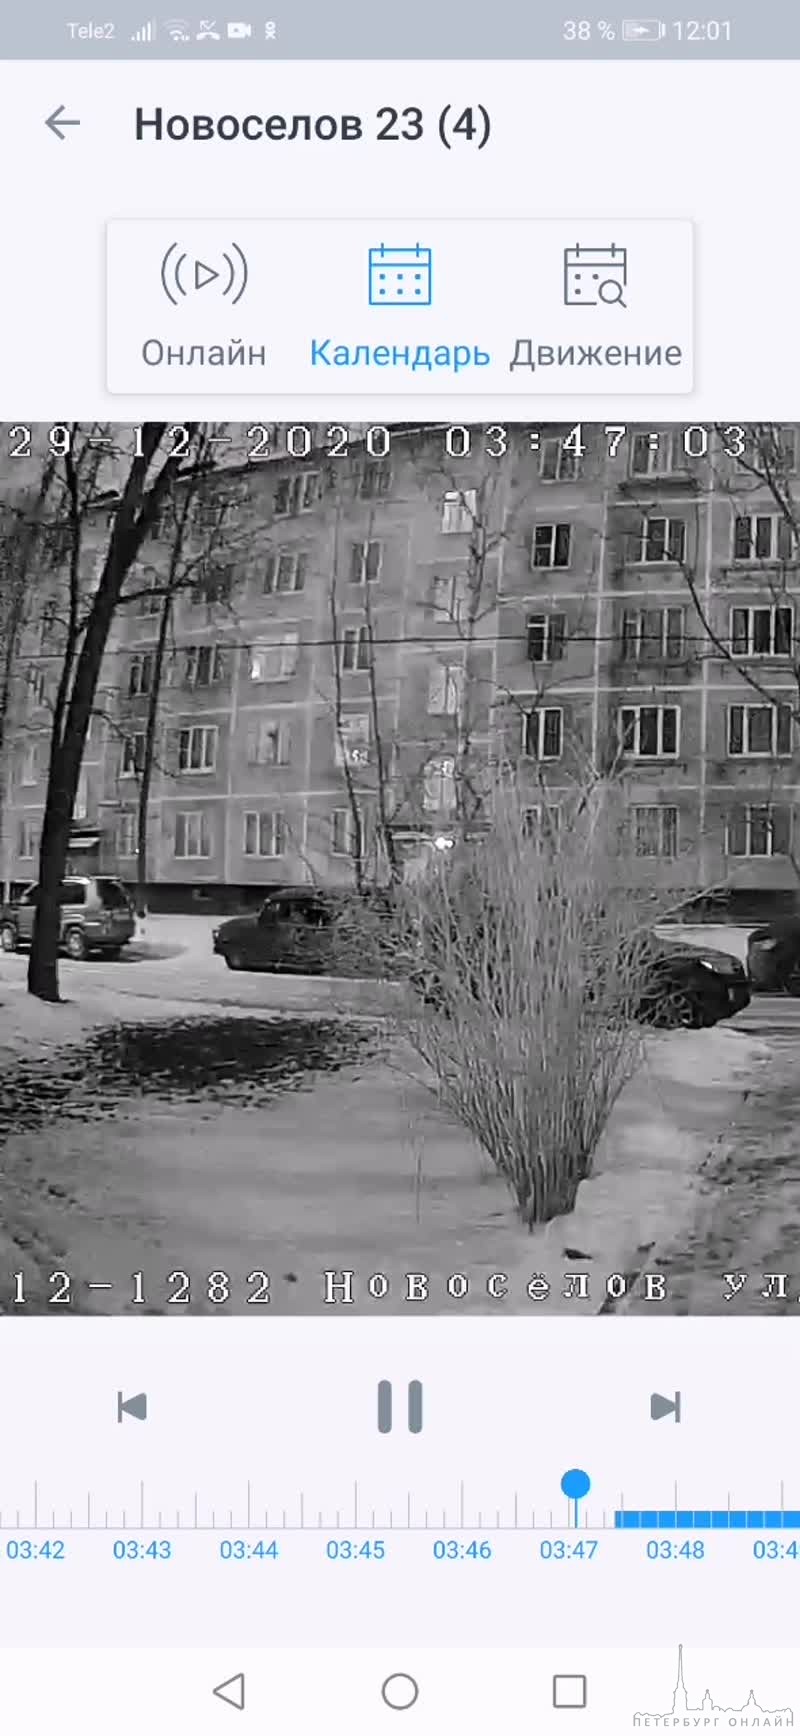 Ищу свидетелей ДТП, произошедшего 29 декабря в 3:47 во дворе по Новосёлов 23 между стоящей машиной Т...